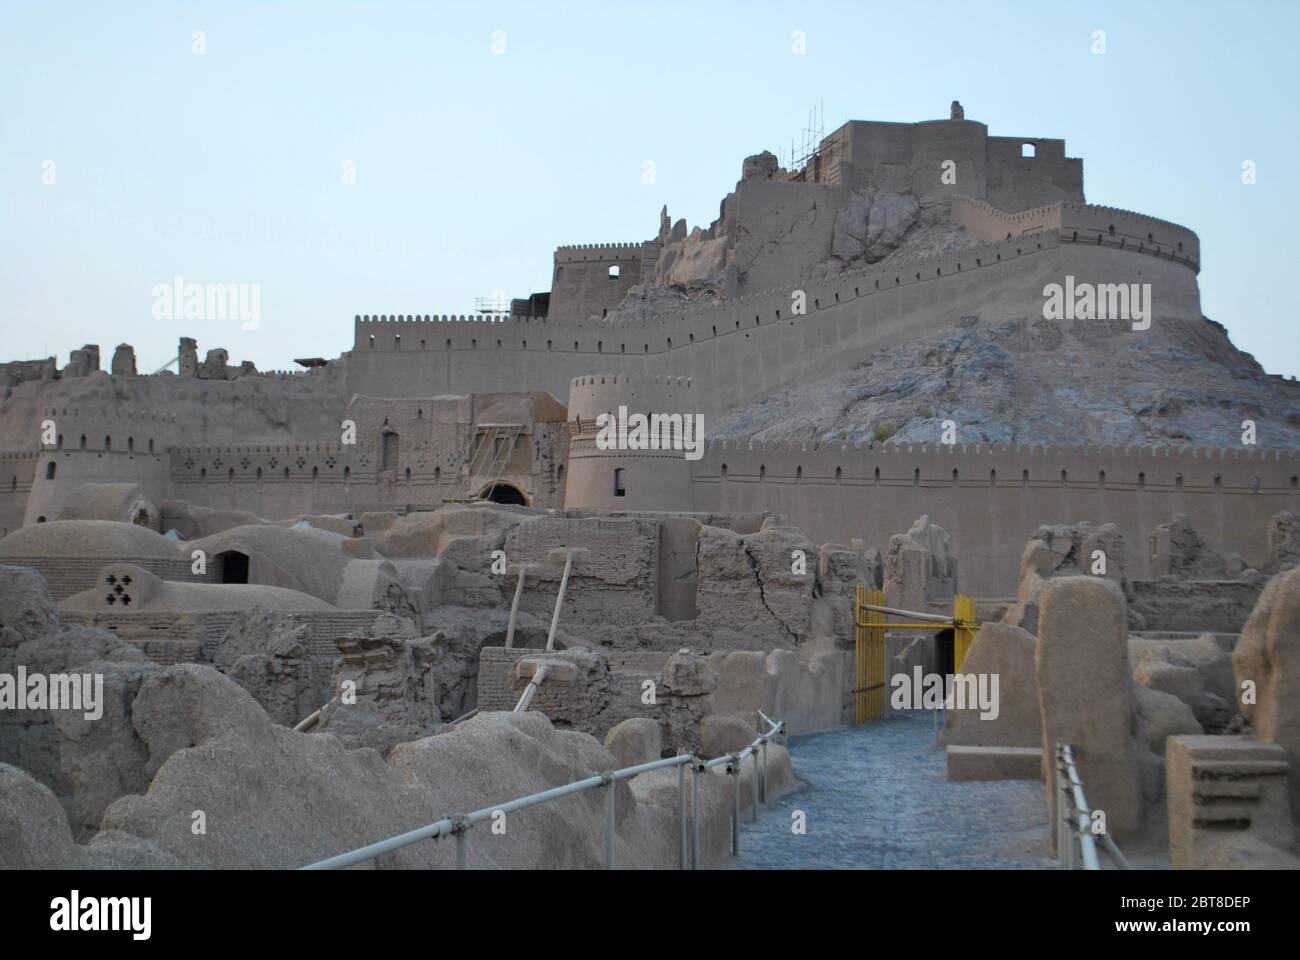 Arg e bam citadel, Bam, Iran Stock Photo